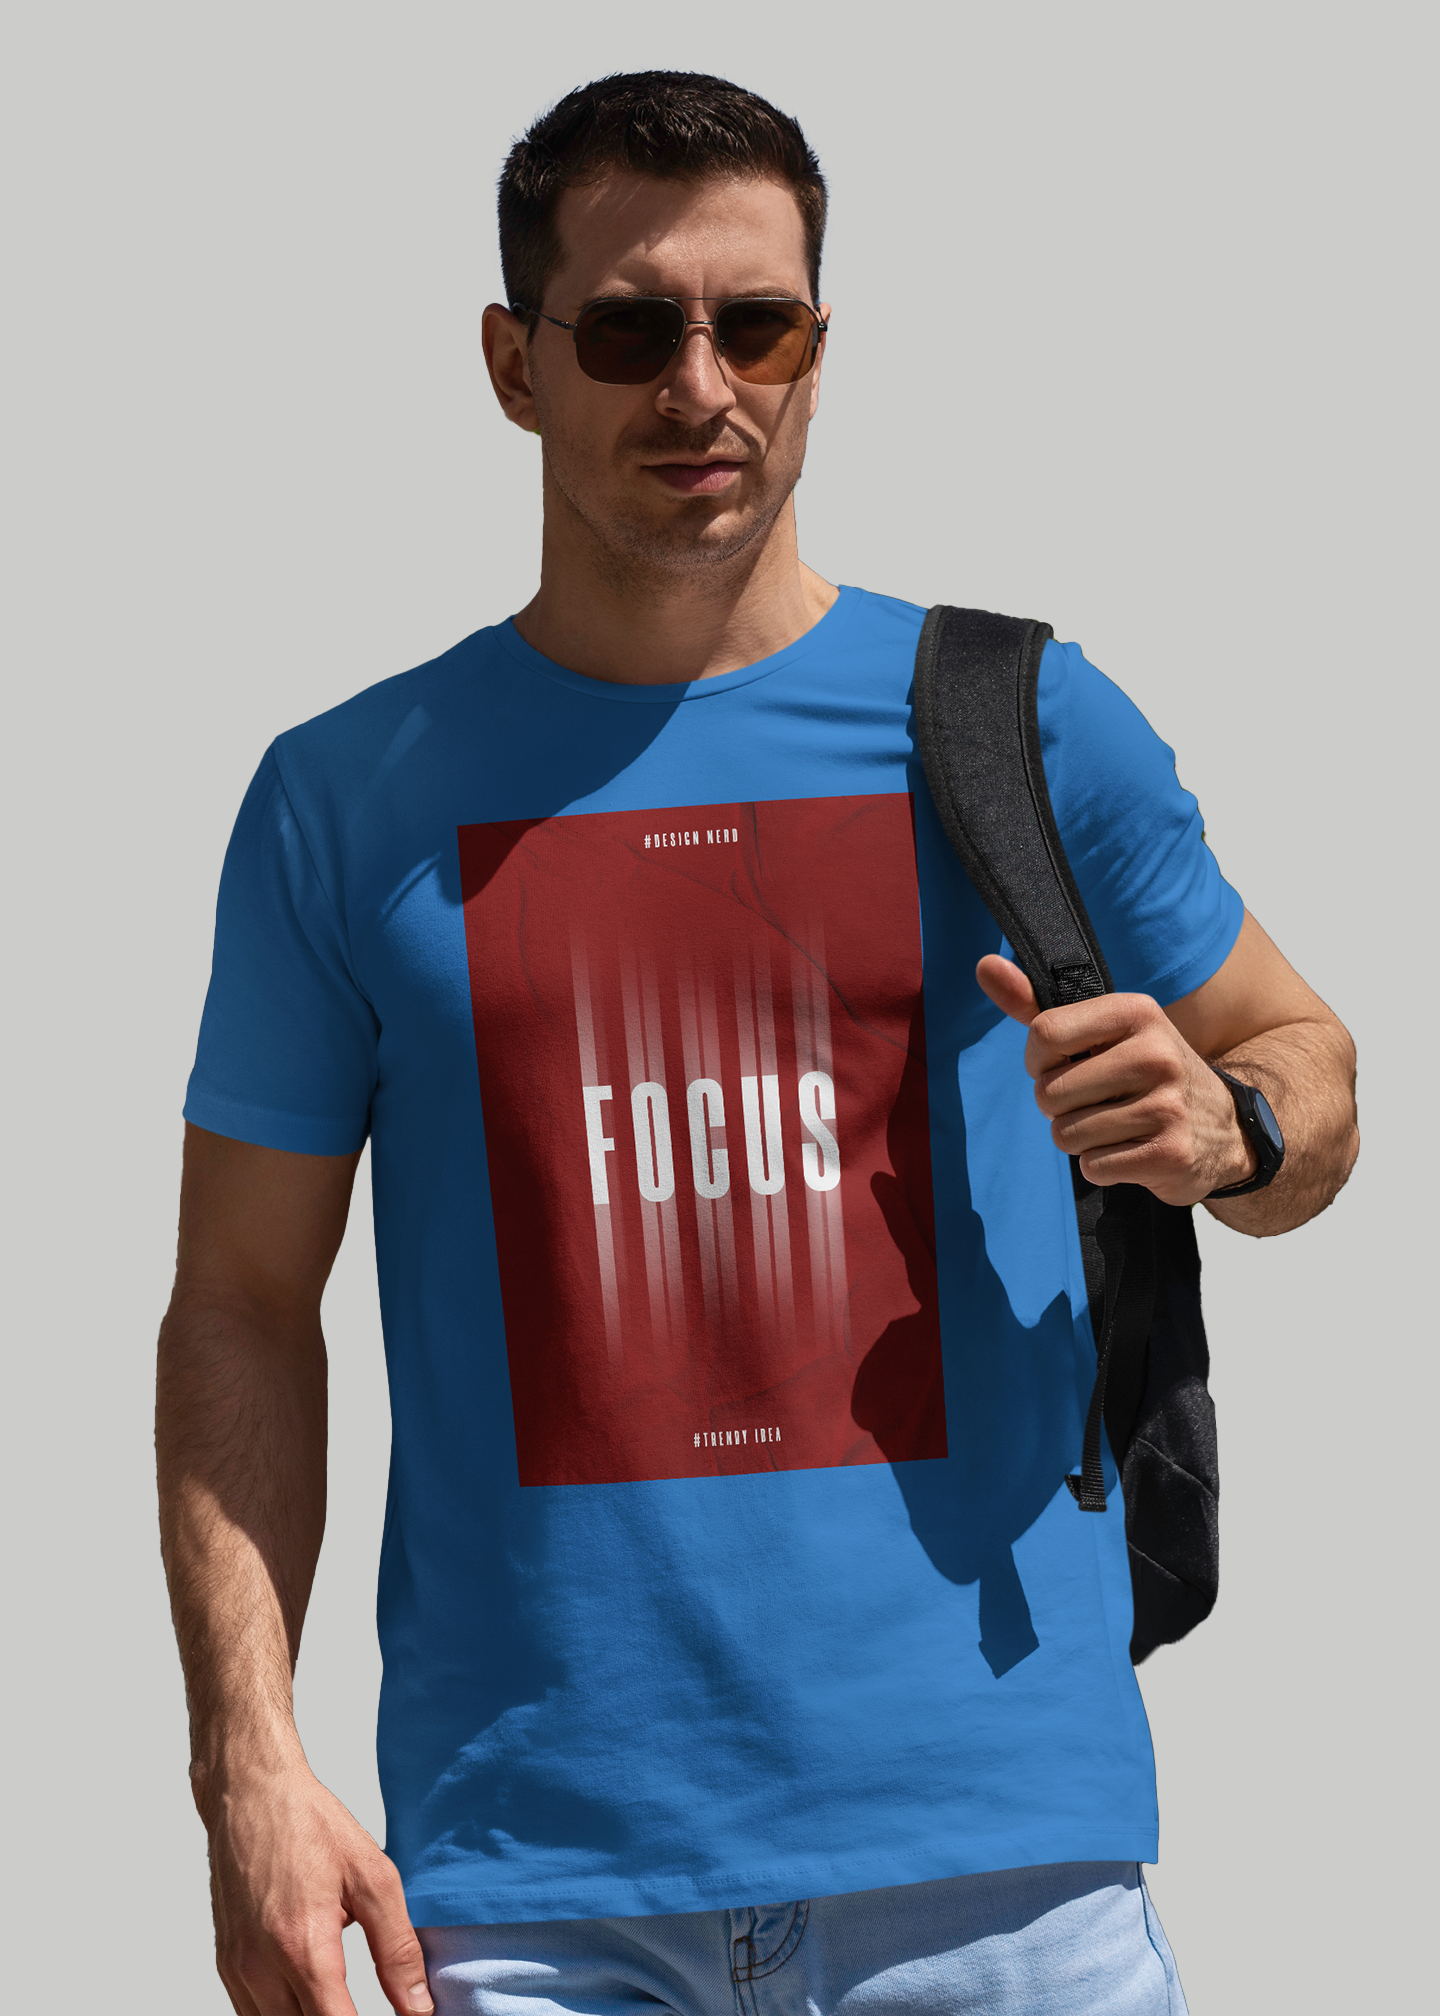 Focus Printed Half Sleeve Premium Cotton T-shirt For Men